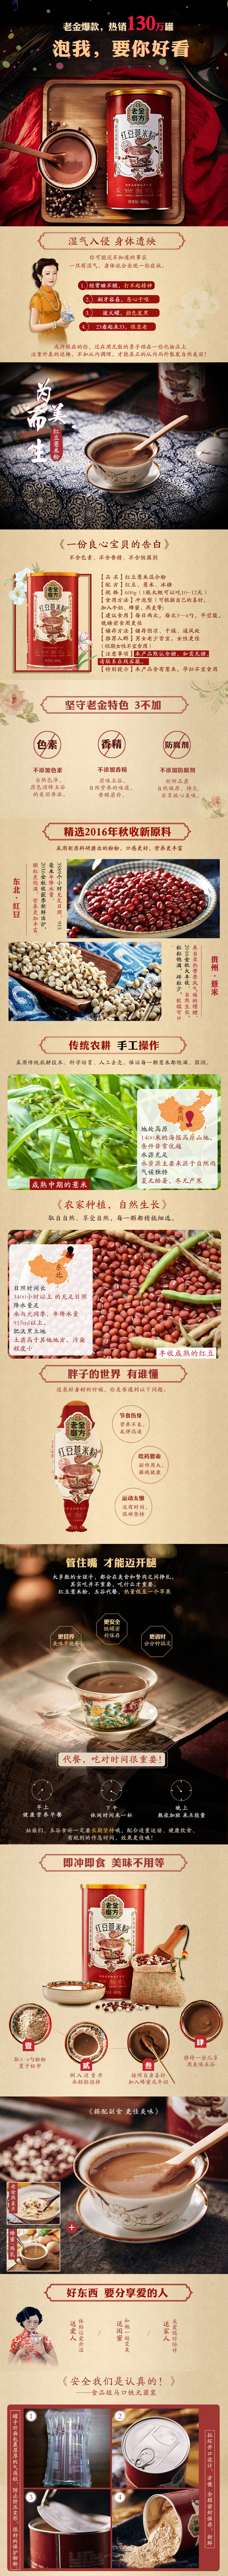 淘宝美工小梨子红豆薏米混合物作品